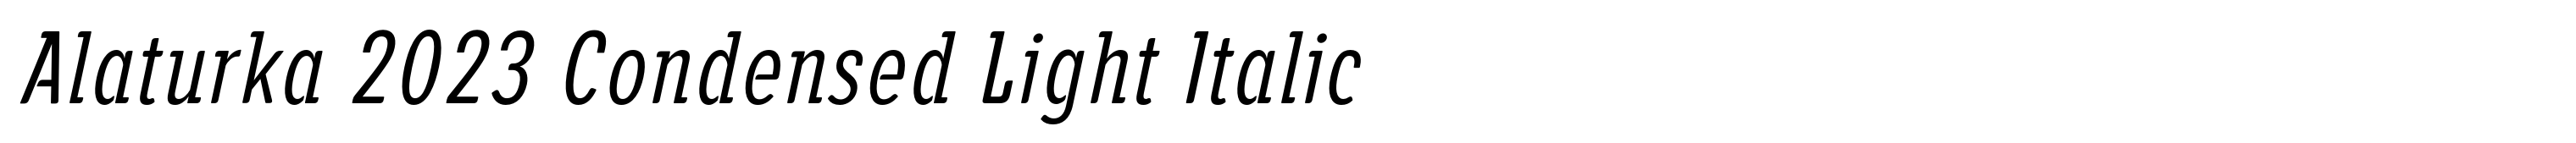 Alaturka 2023 Condensed Light Italic